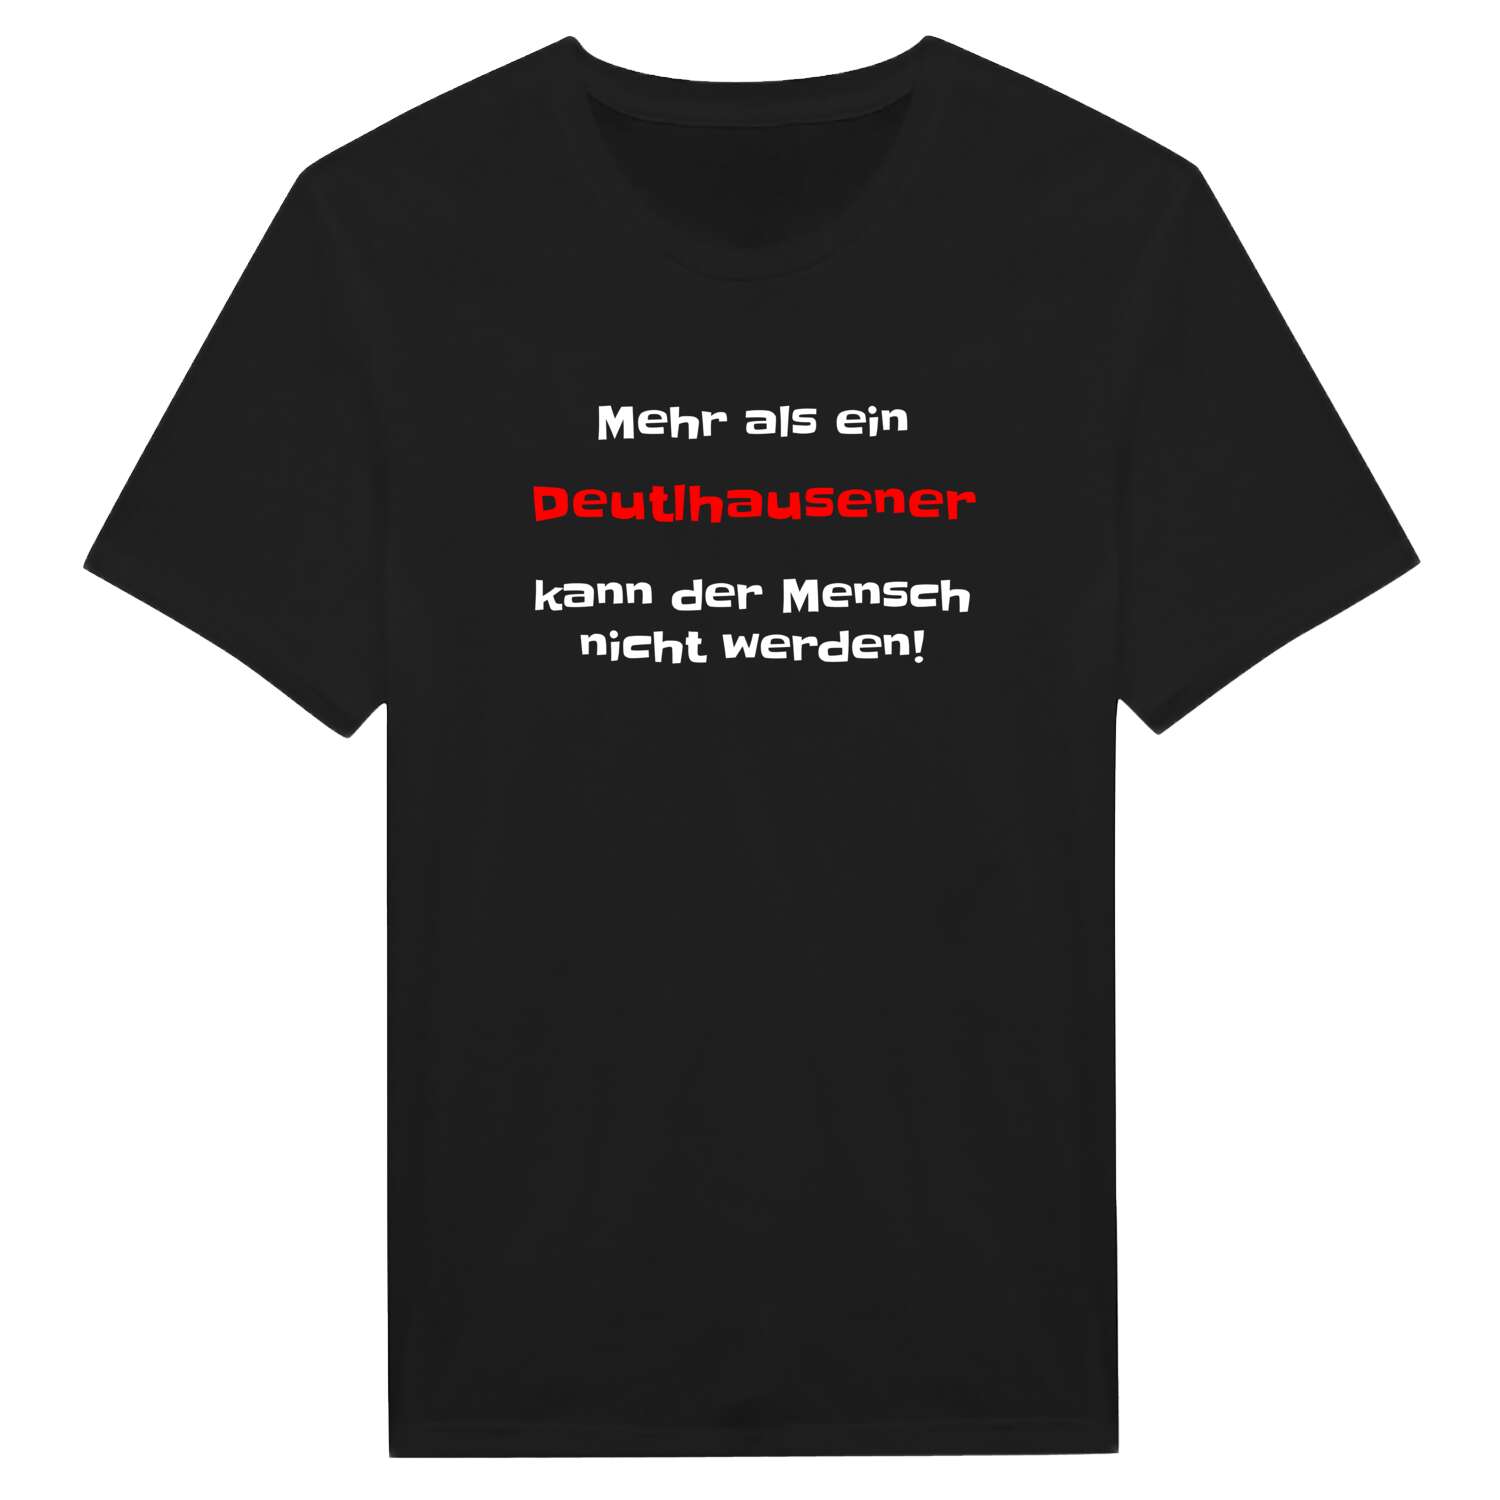 Deutlhausen T-Shirt »Mehr als ein«